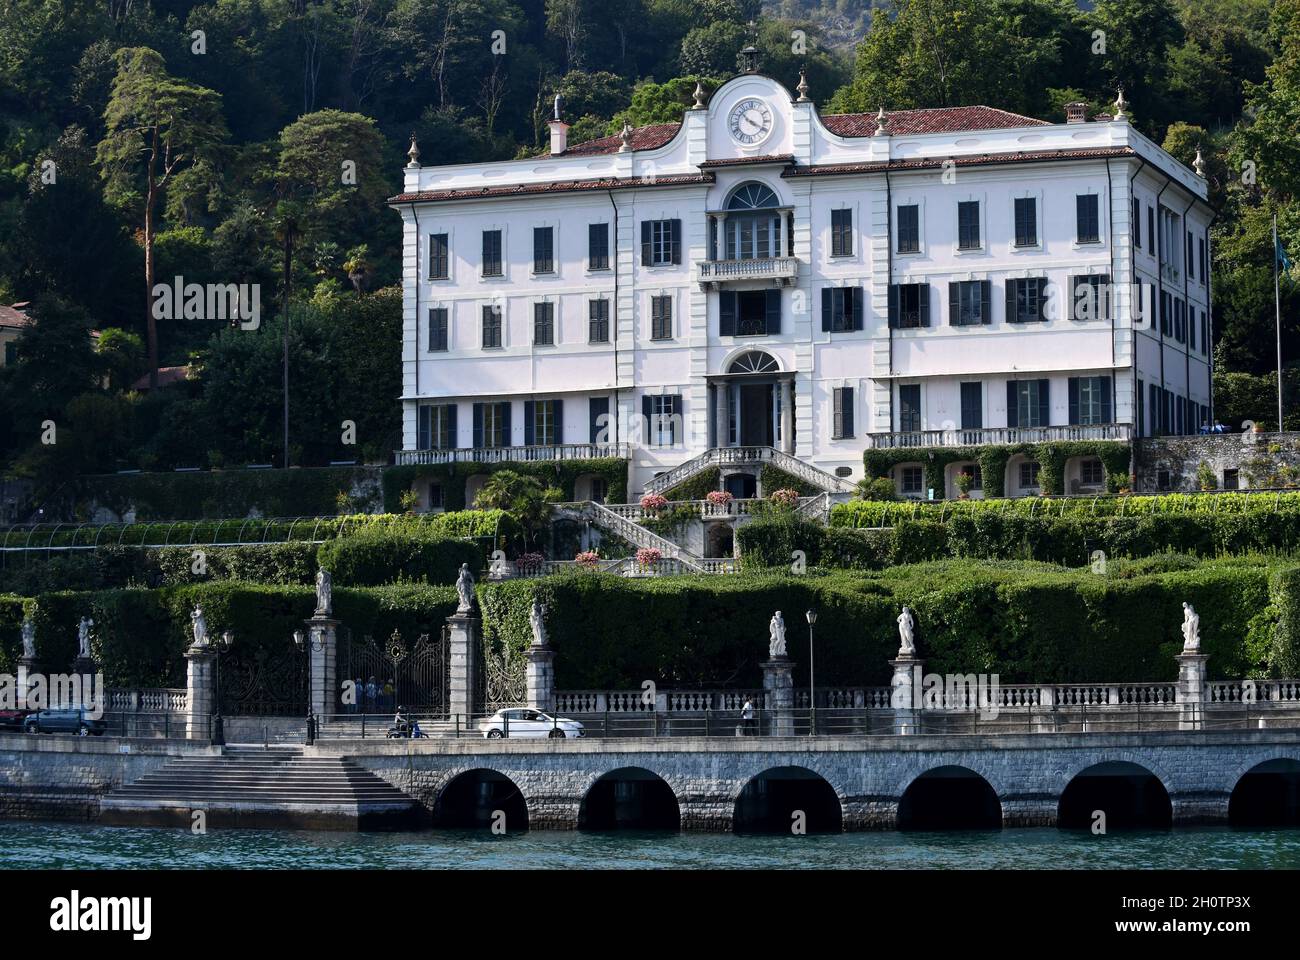 Villa Carlotta, Tremezzo , Lake Como, Italy Stock Photo